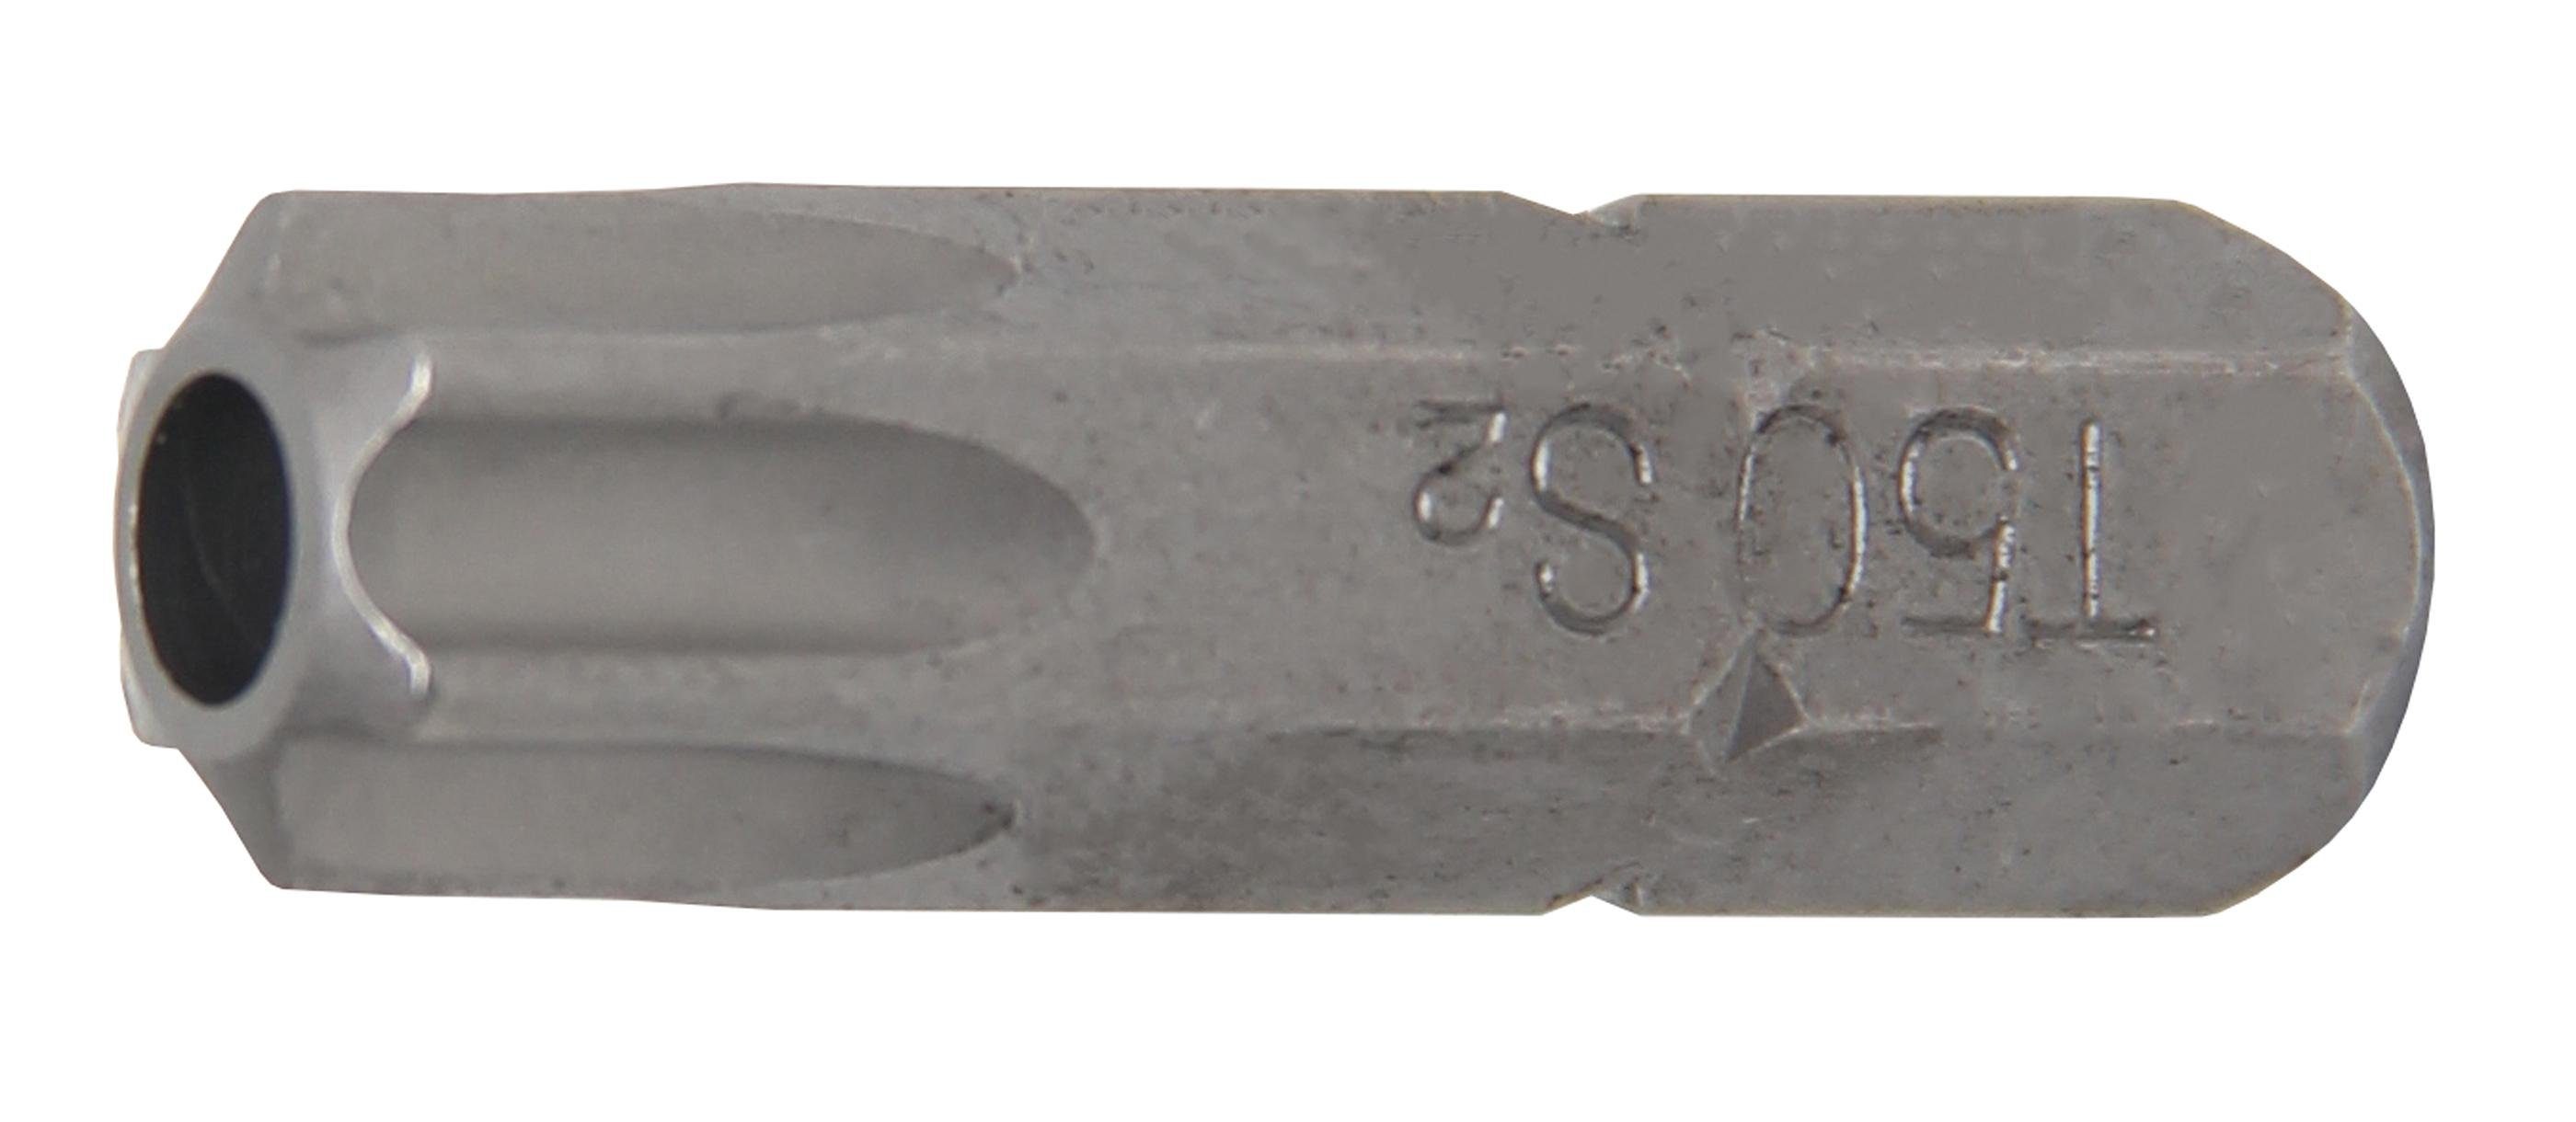 BGS technic Bit-Schraubendreher Bit, Länge 30 mm, Antrieb Außensechskant 8 mm (5/16), T-Profil (für Torx) mit Bohrung T50